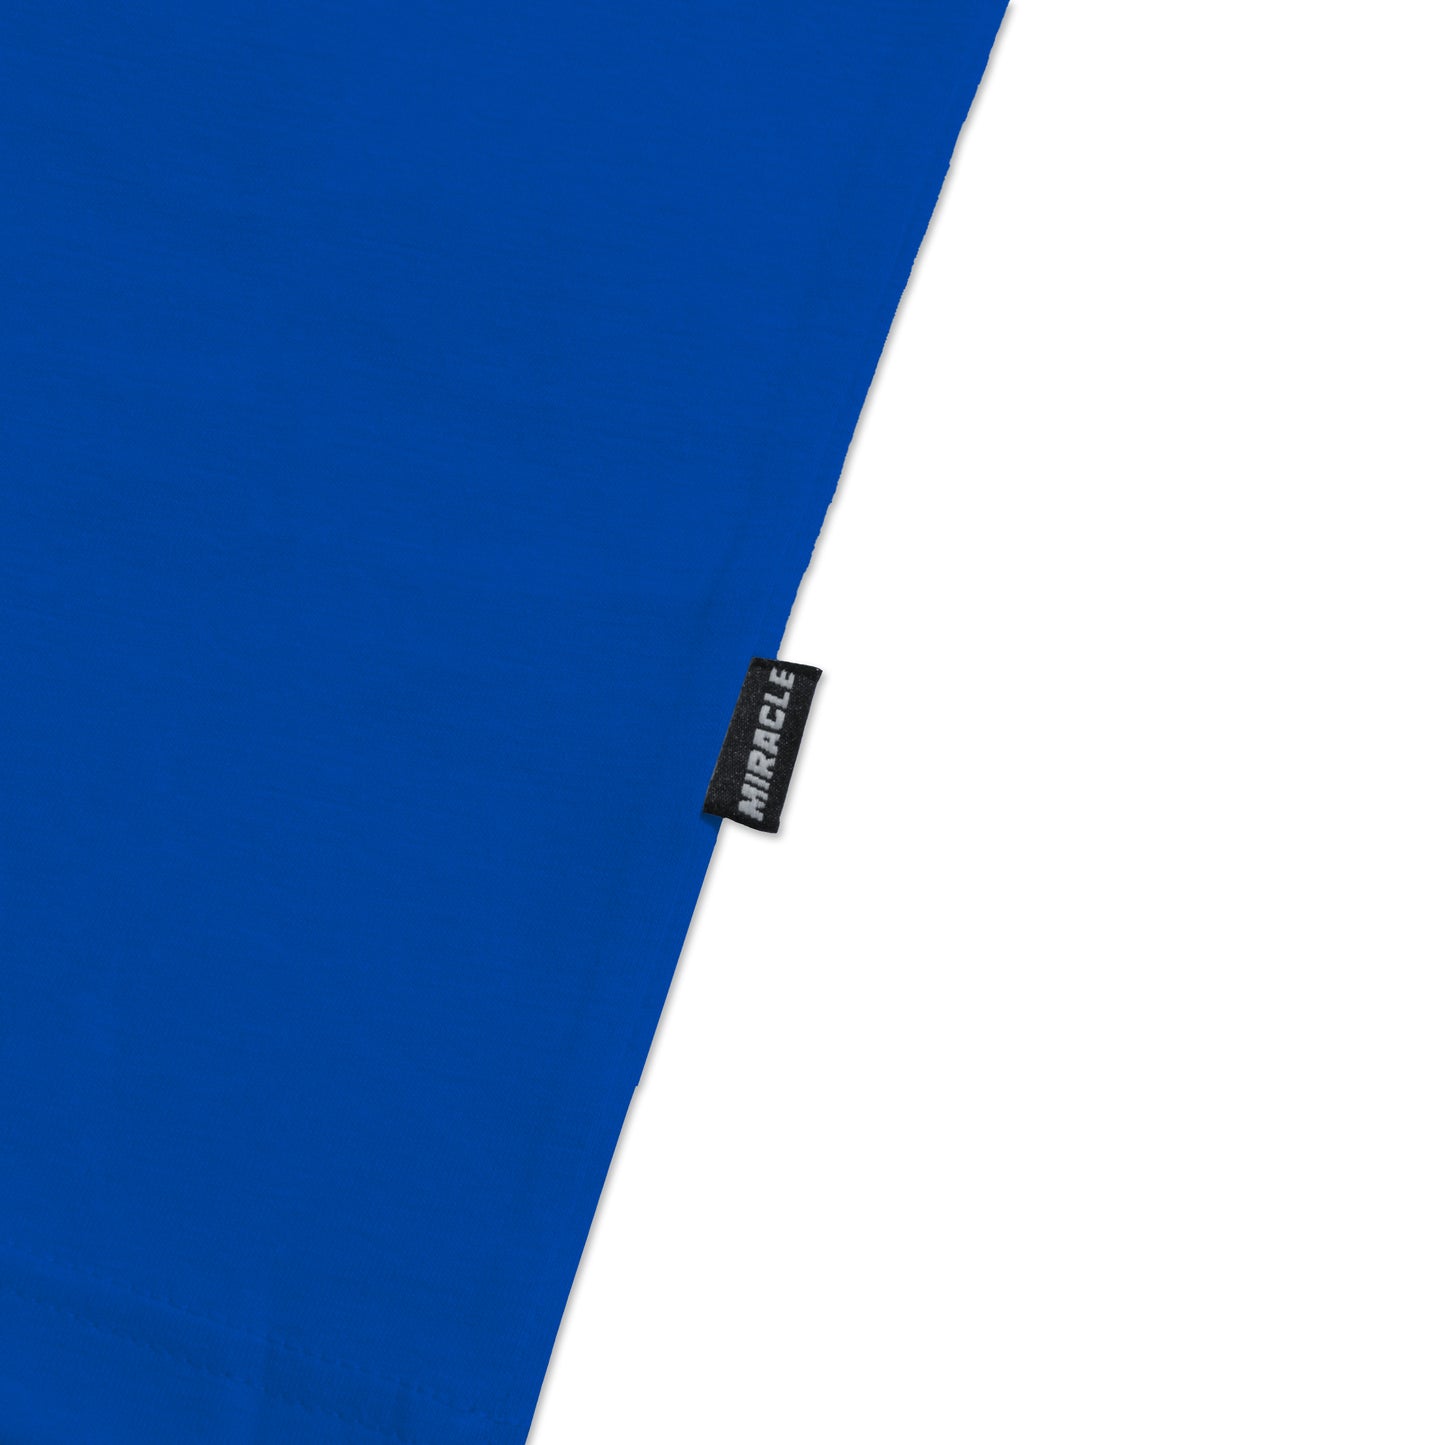 Miracle Mates - Lomme Basic Blue Oversized T Shirt